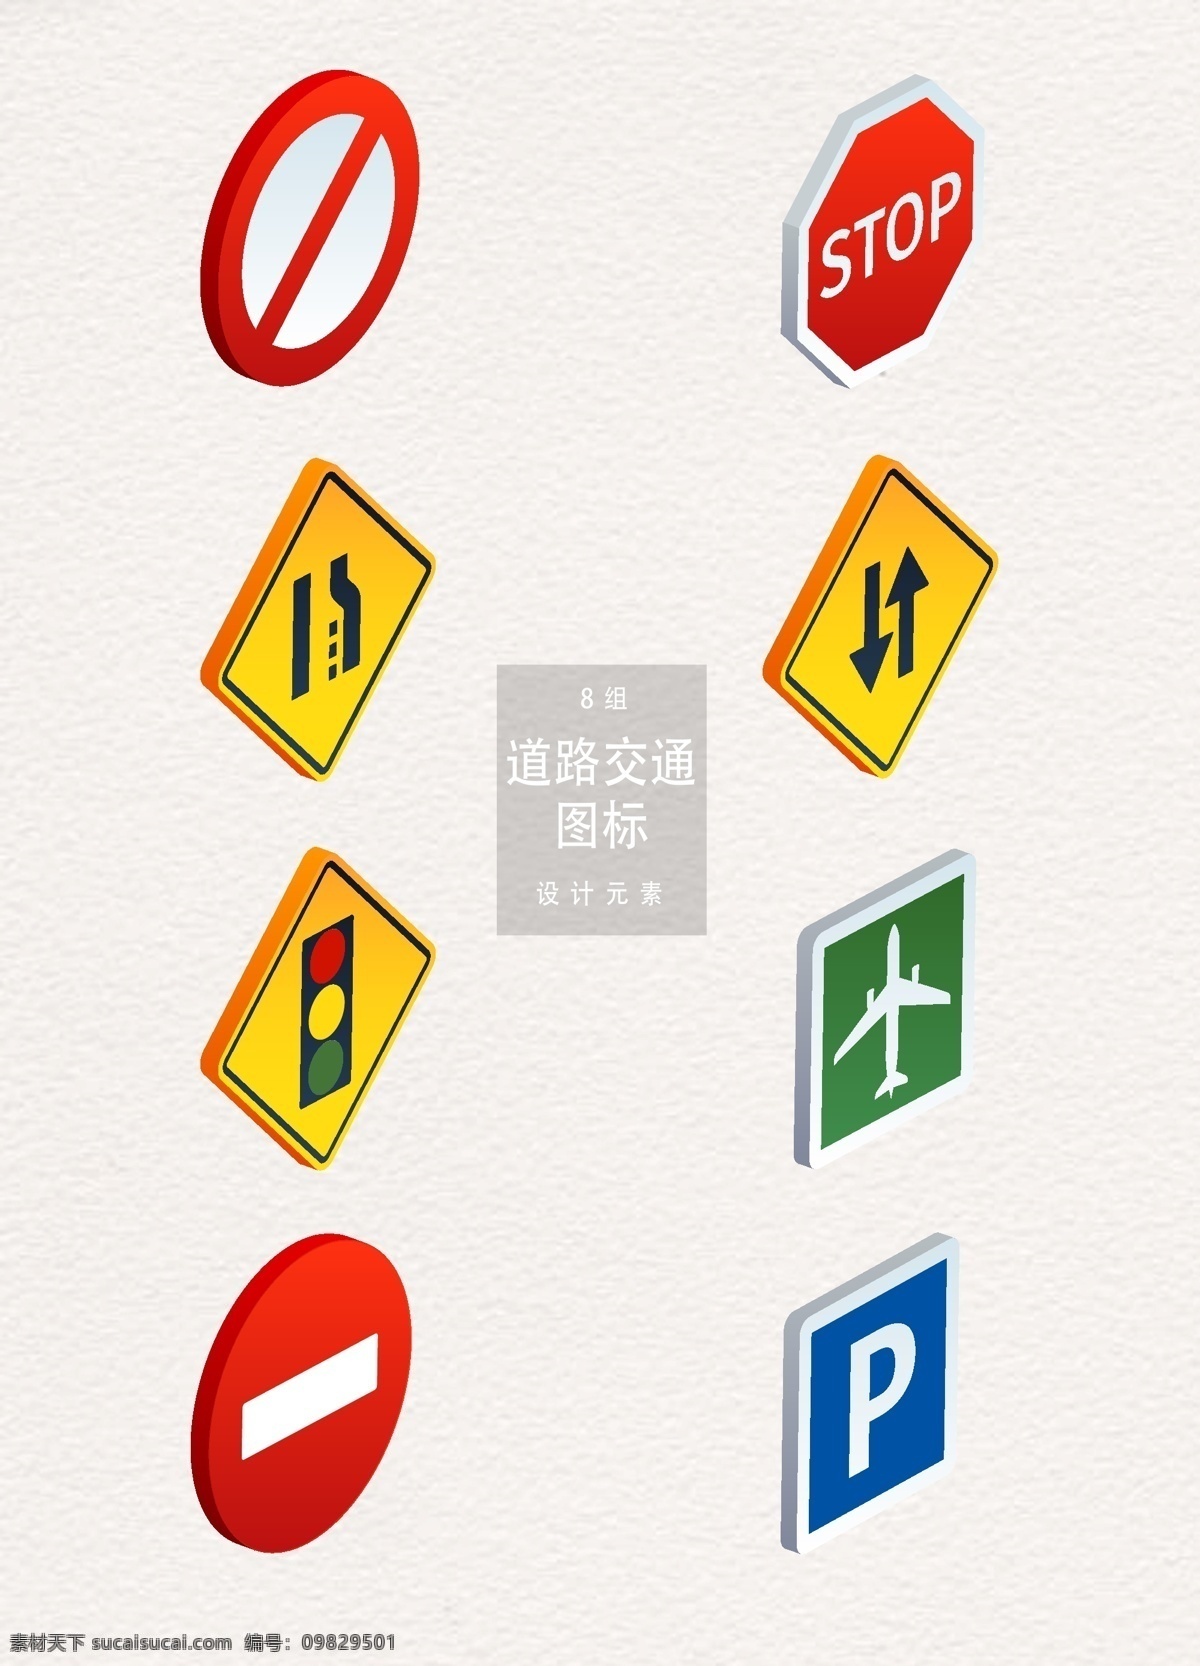 立体 道路交通 图标 元素 图标设计 红绿灯 飞机场 交通图标 道路交通图标 禁止图标 停止 暂停图标 双向道